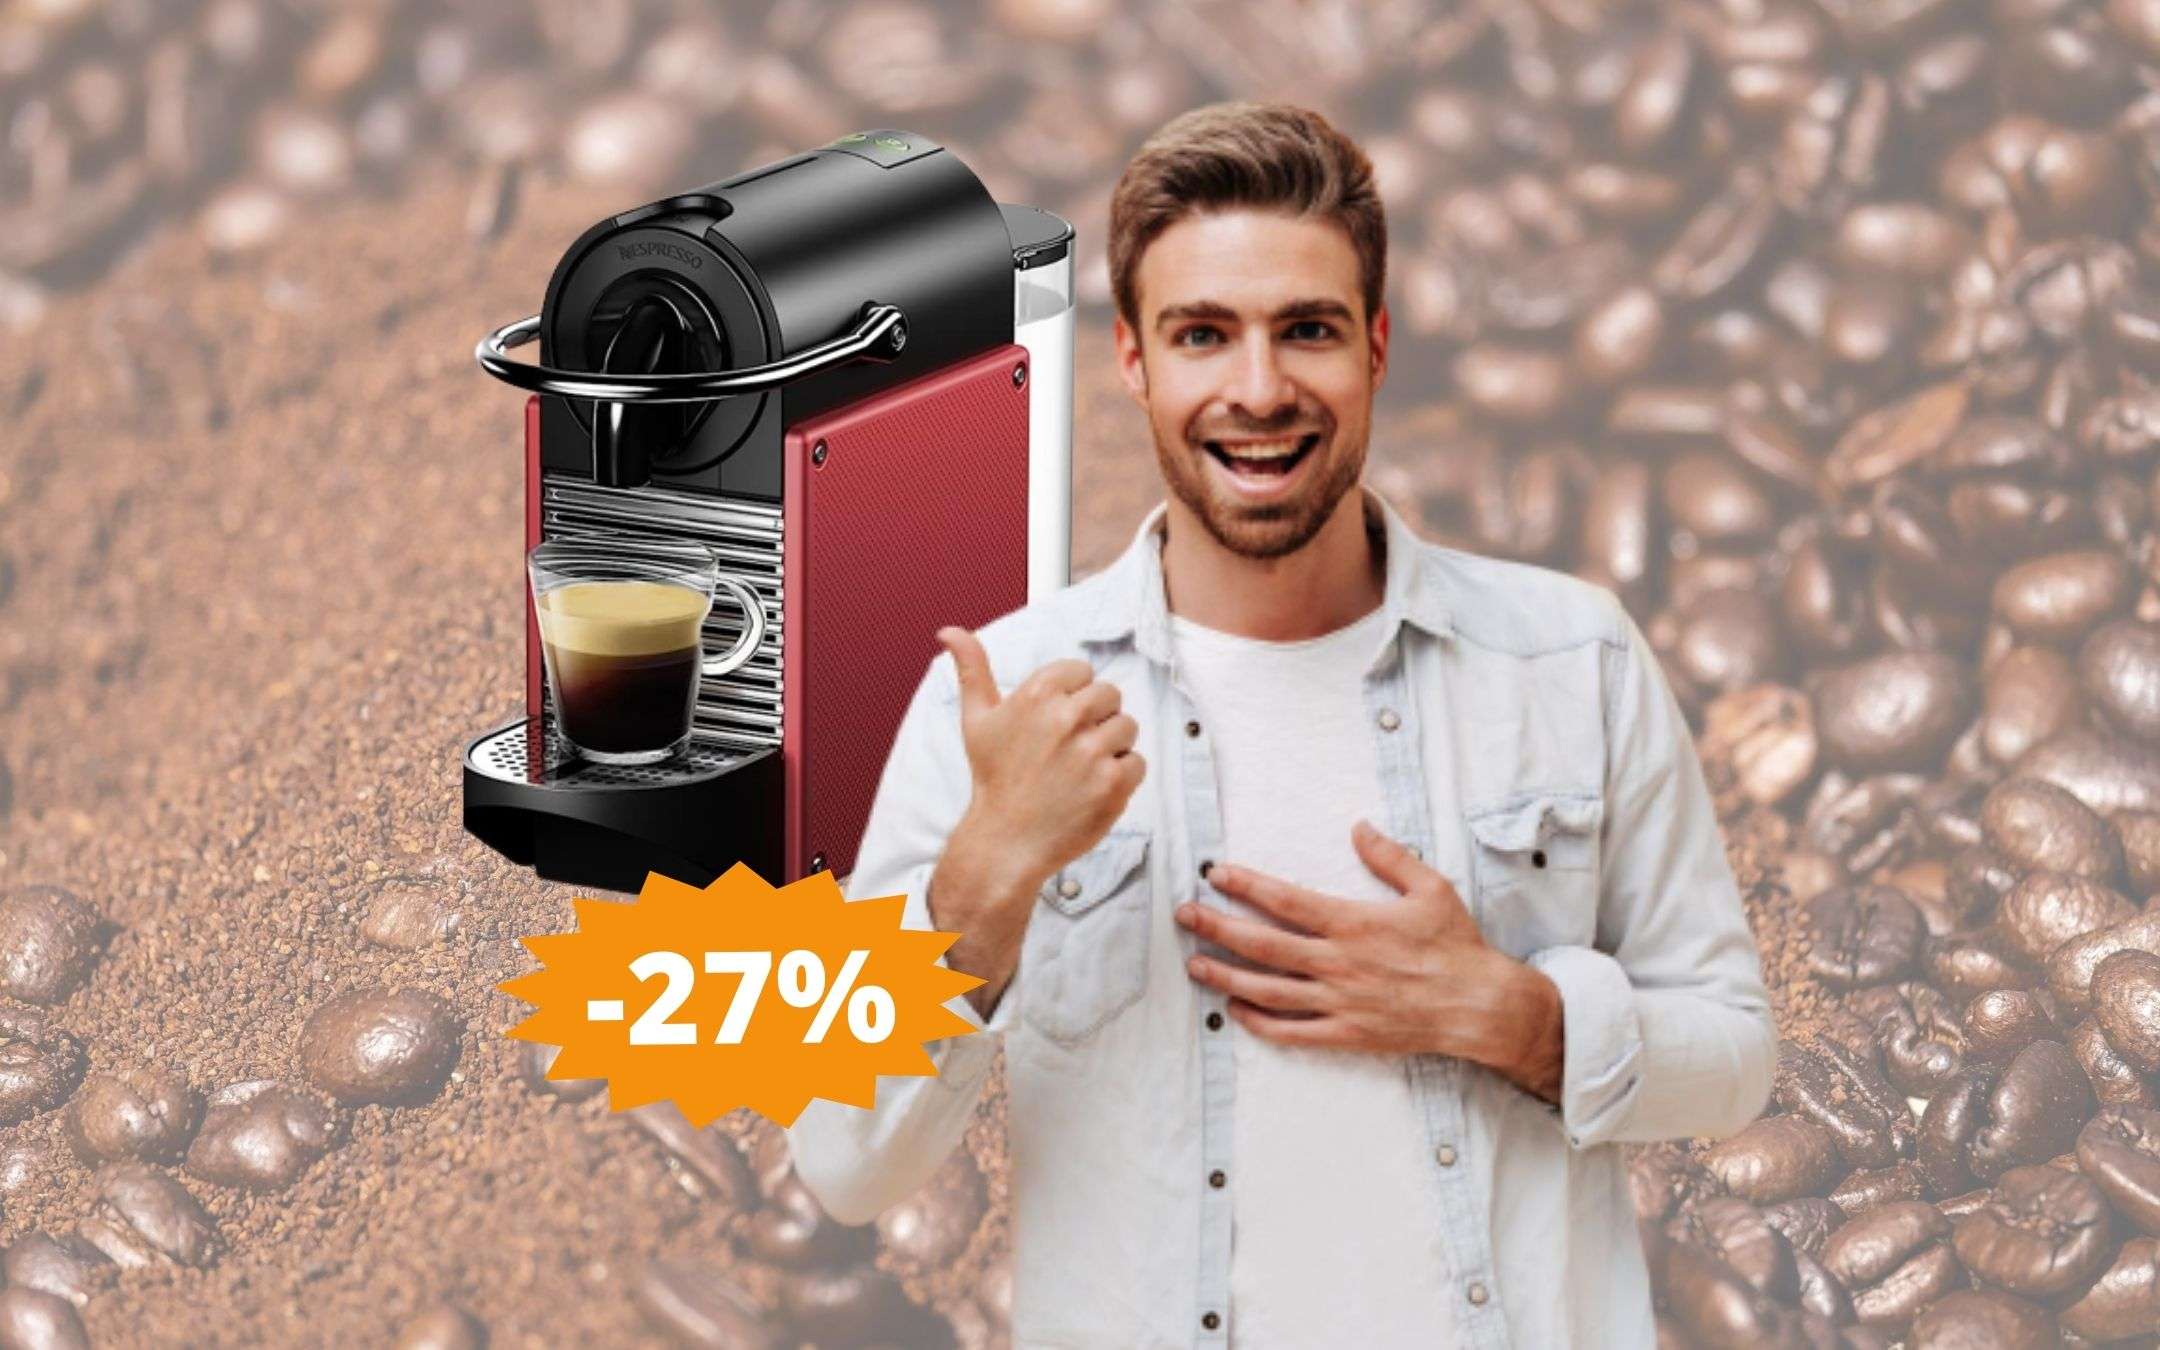 Macchina caffè Nespresso Pixie: super sconto del 27%